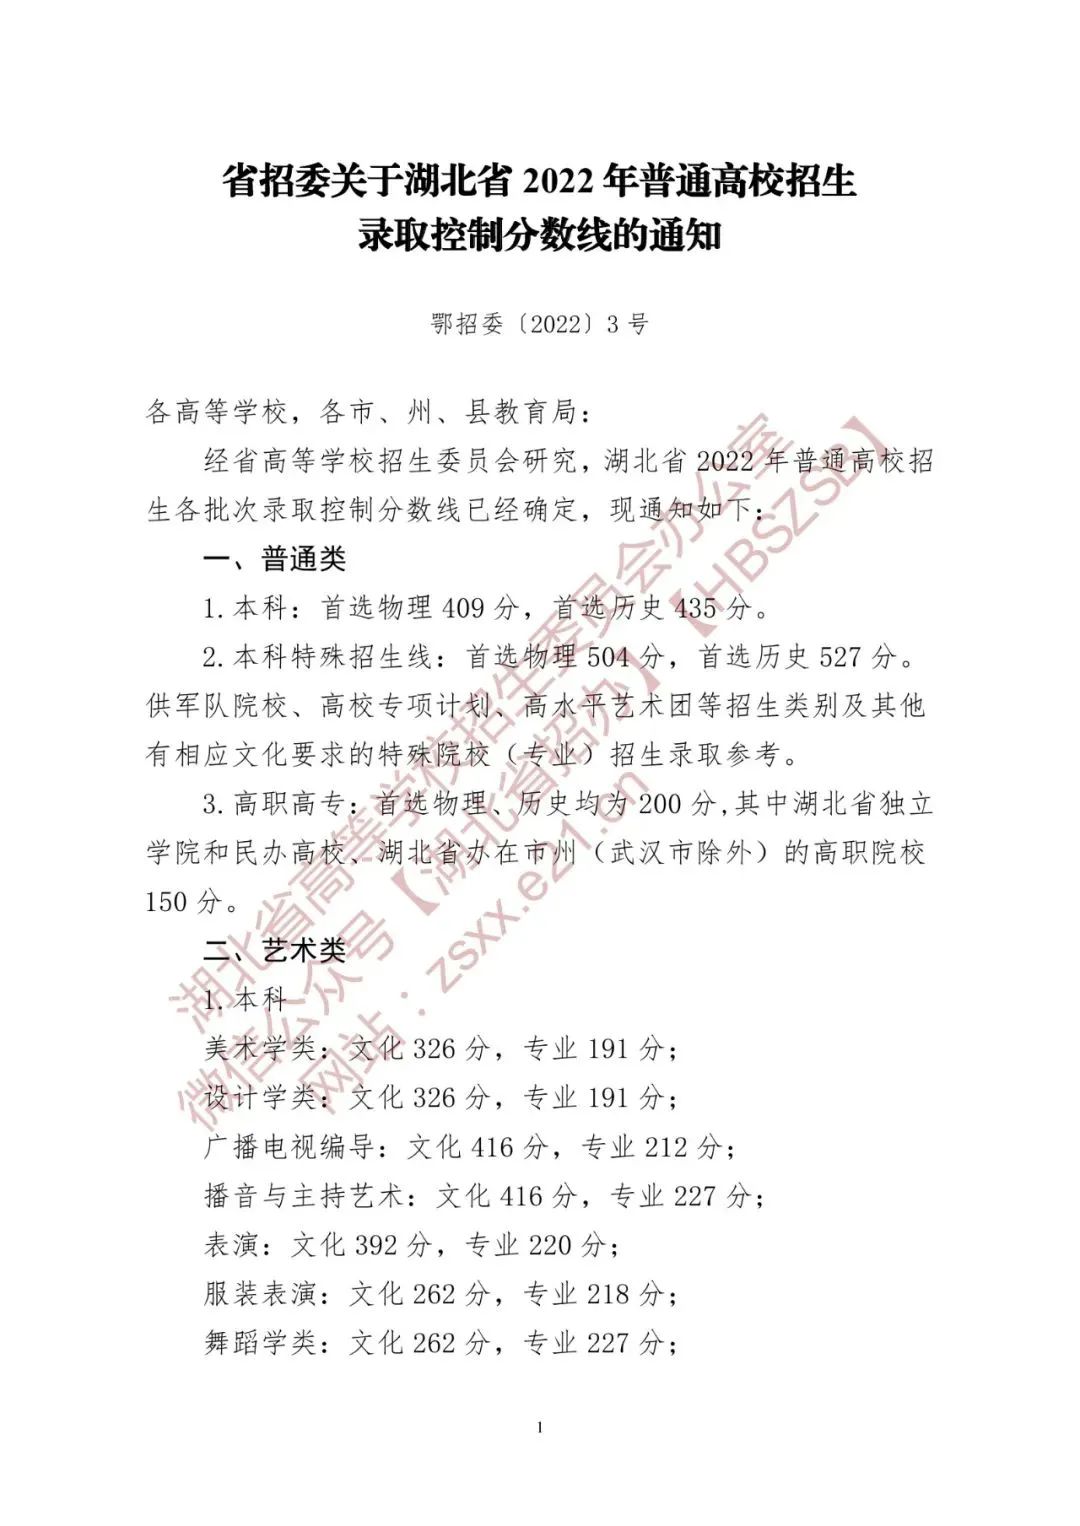 省招委关于湖北省2022年普通高校招生录取控制分数线的通知